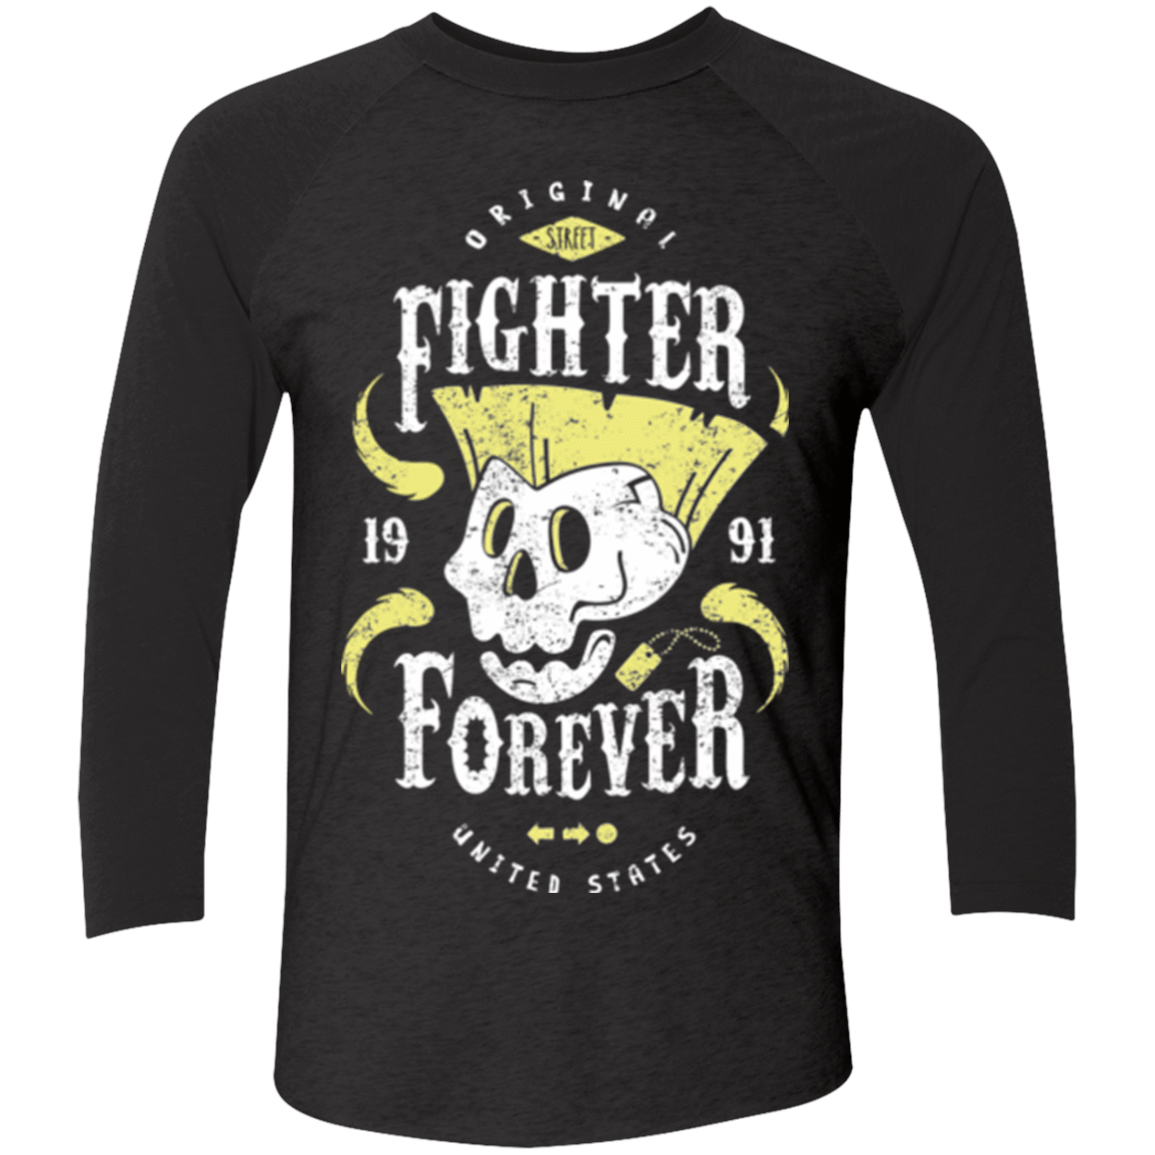 T-Shirts Vintage Black/Vintage Black / X-Small Fighter Forever Guile Men's Triblend 3/4 Sleeve